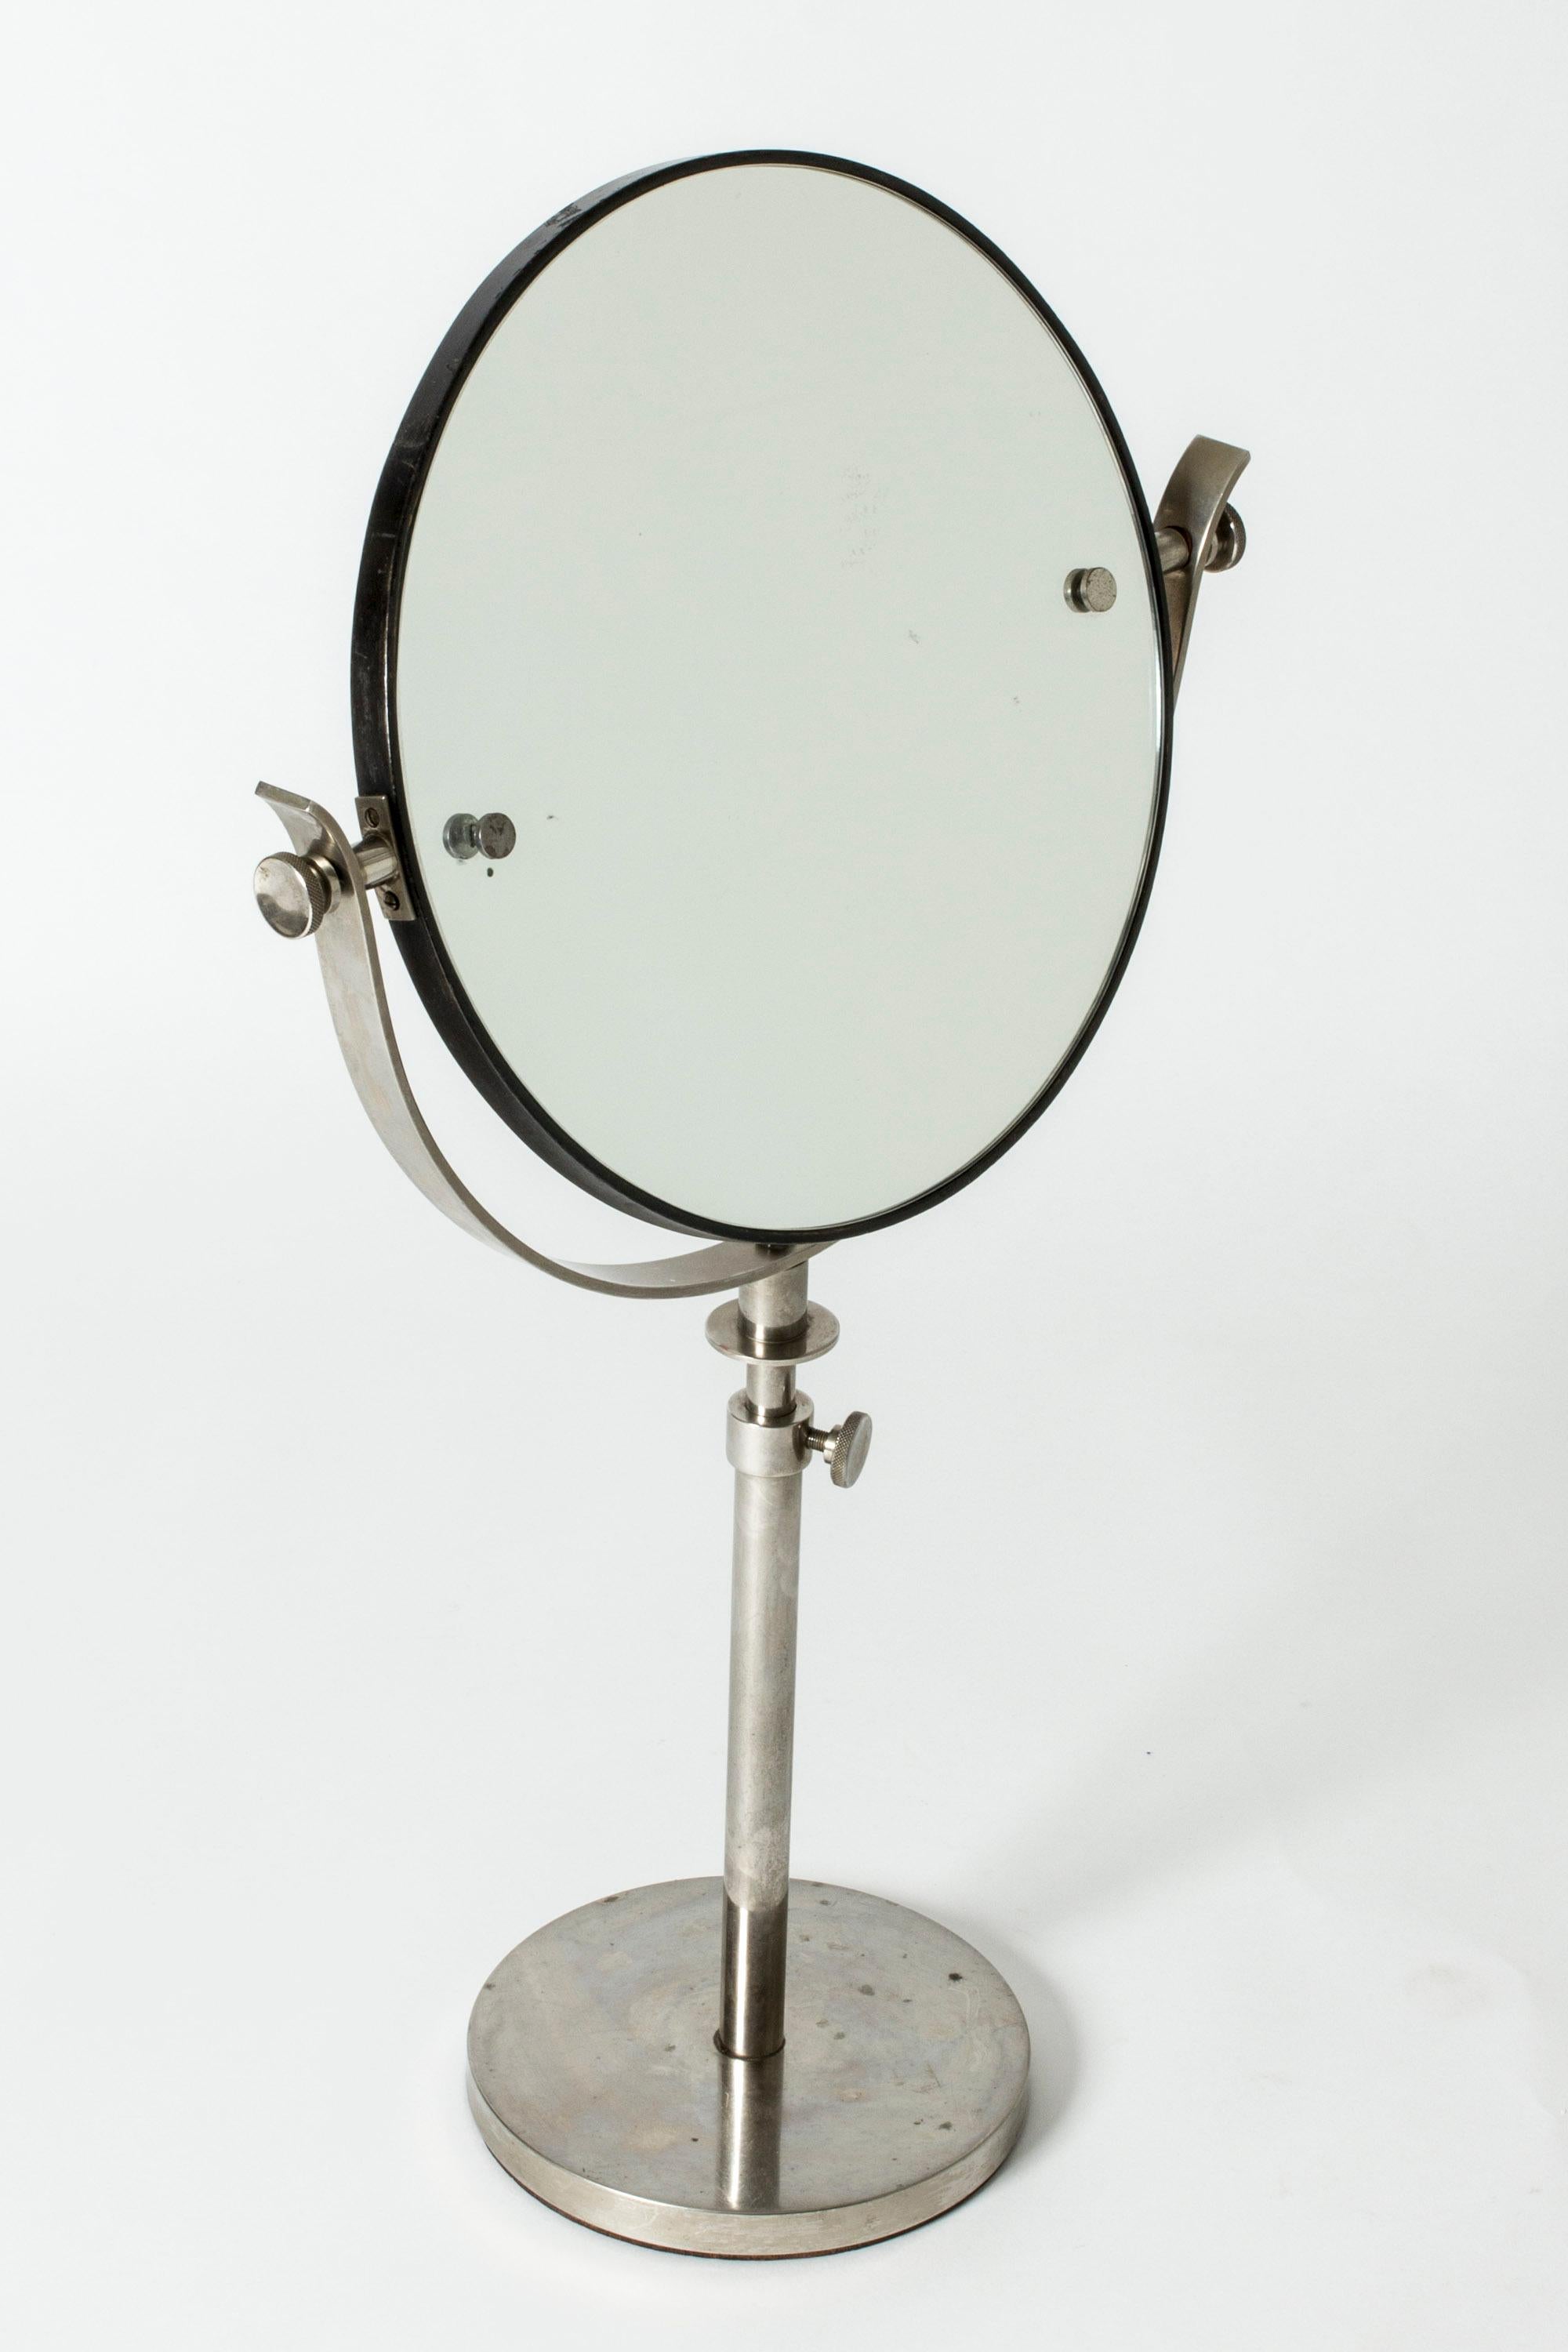 Eleganter Tischspiegel, mit schönen Details. Hergestellt aus weißem Metall. Längliches Design, höhenverstellbar, 77-91 cm.